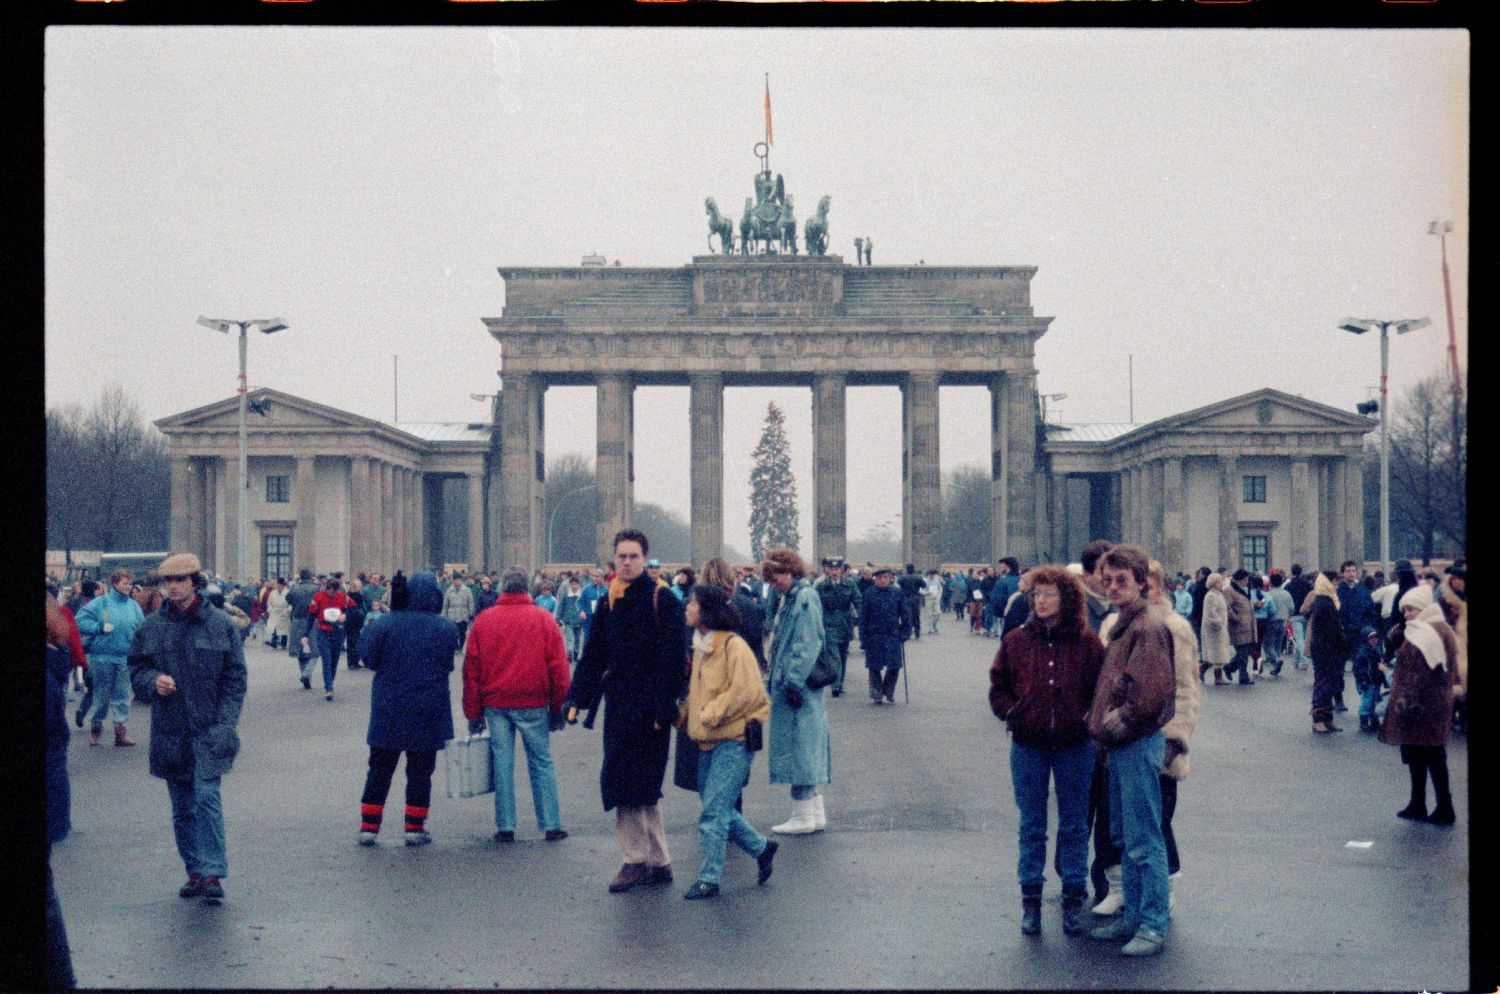 Fotografie: Erster Gesamt-Berliner Neujahrslauf 1990 in Berlin (AlliiertenMuseum/U.S. Army Photograph Public Domain Mark)